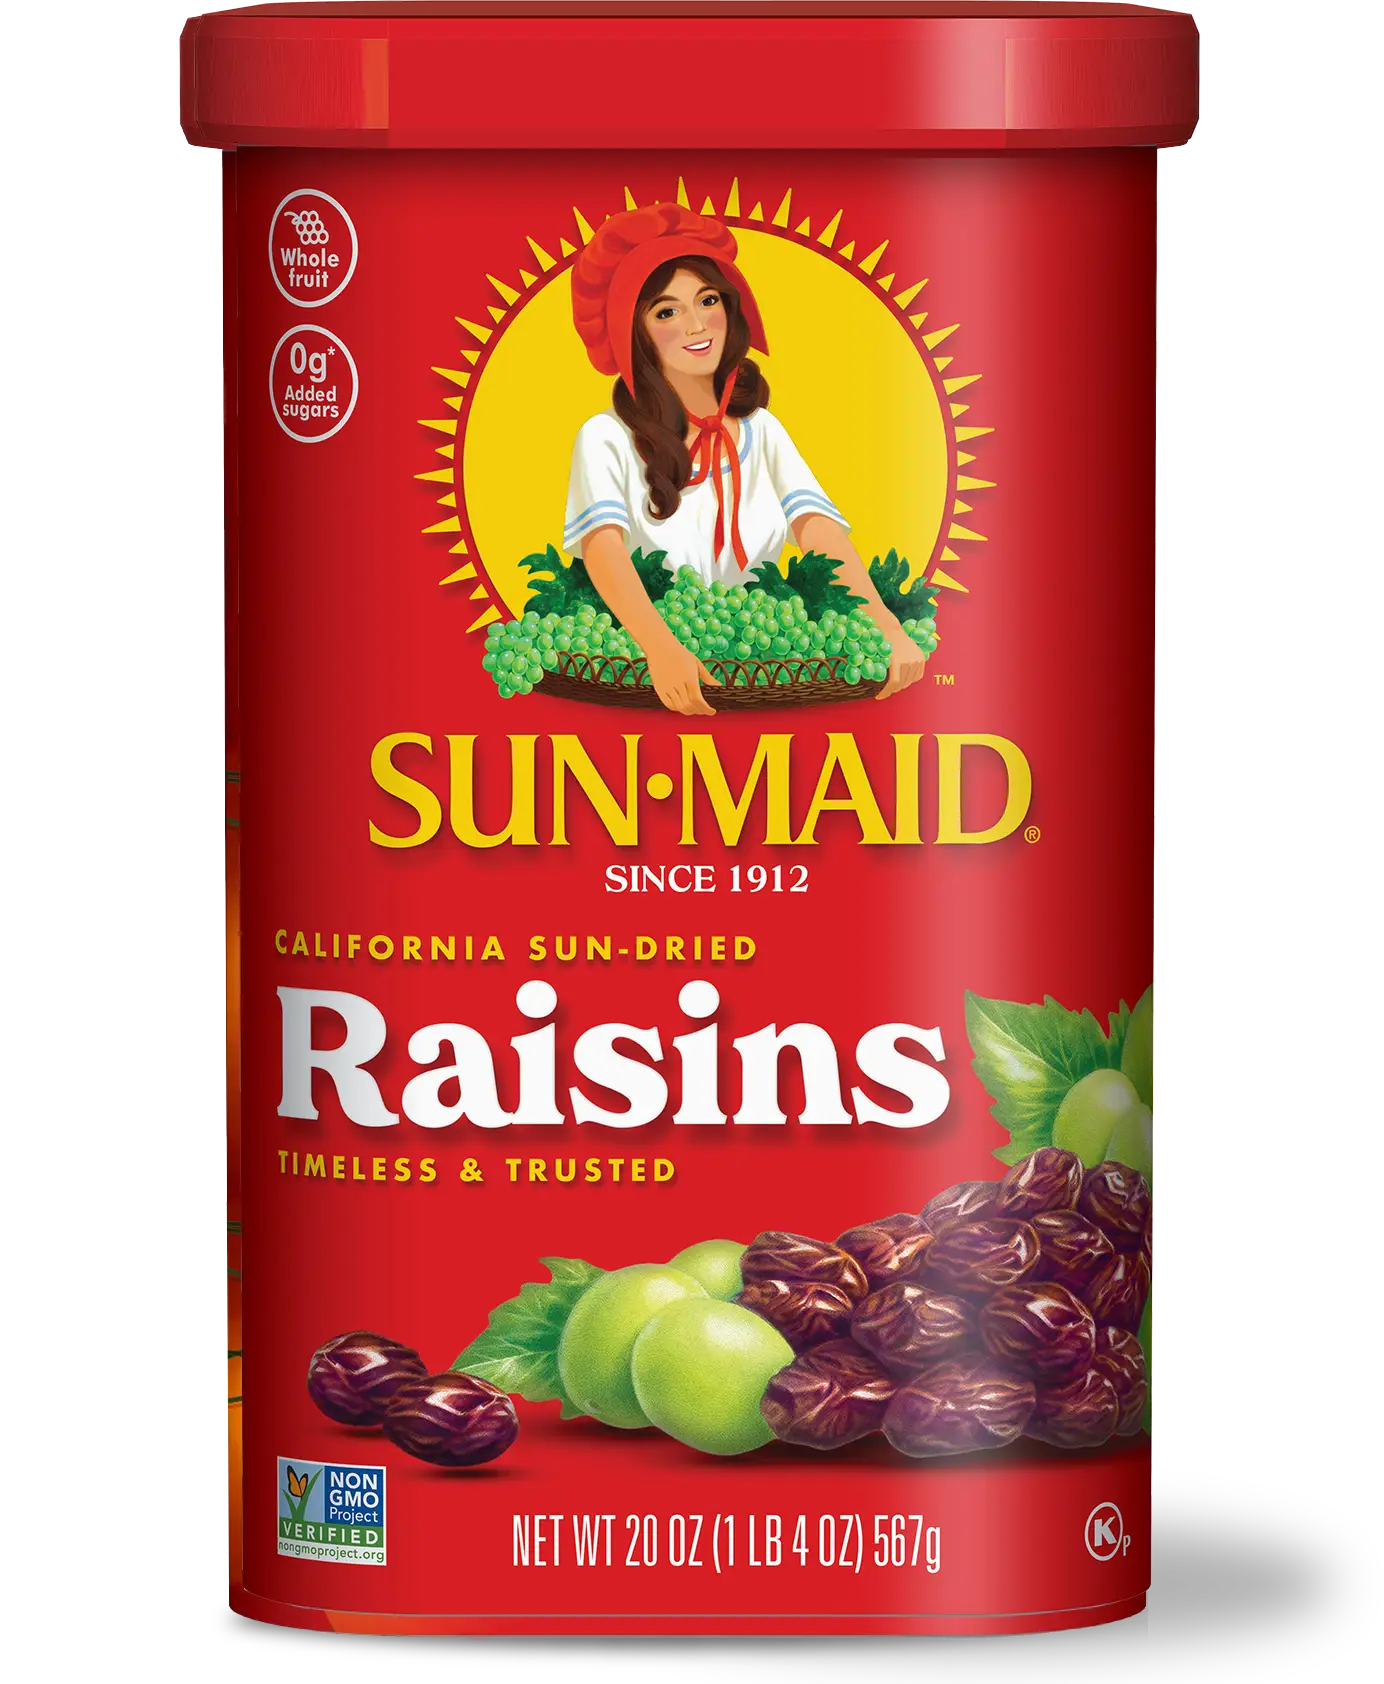 Classic Raisins package